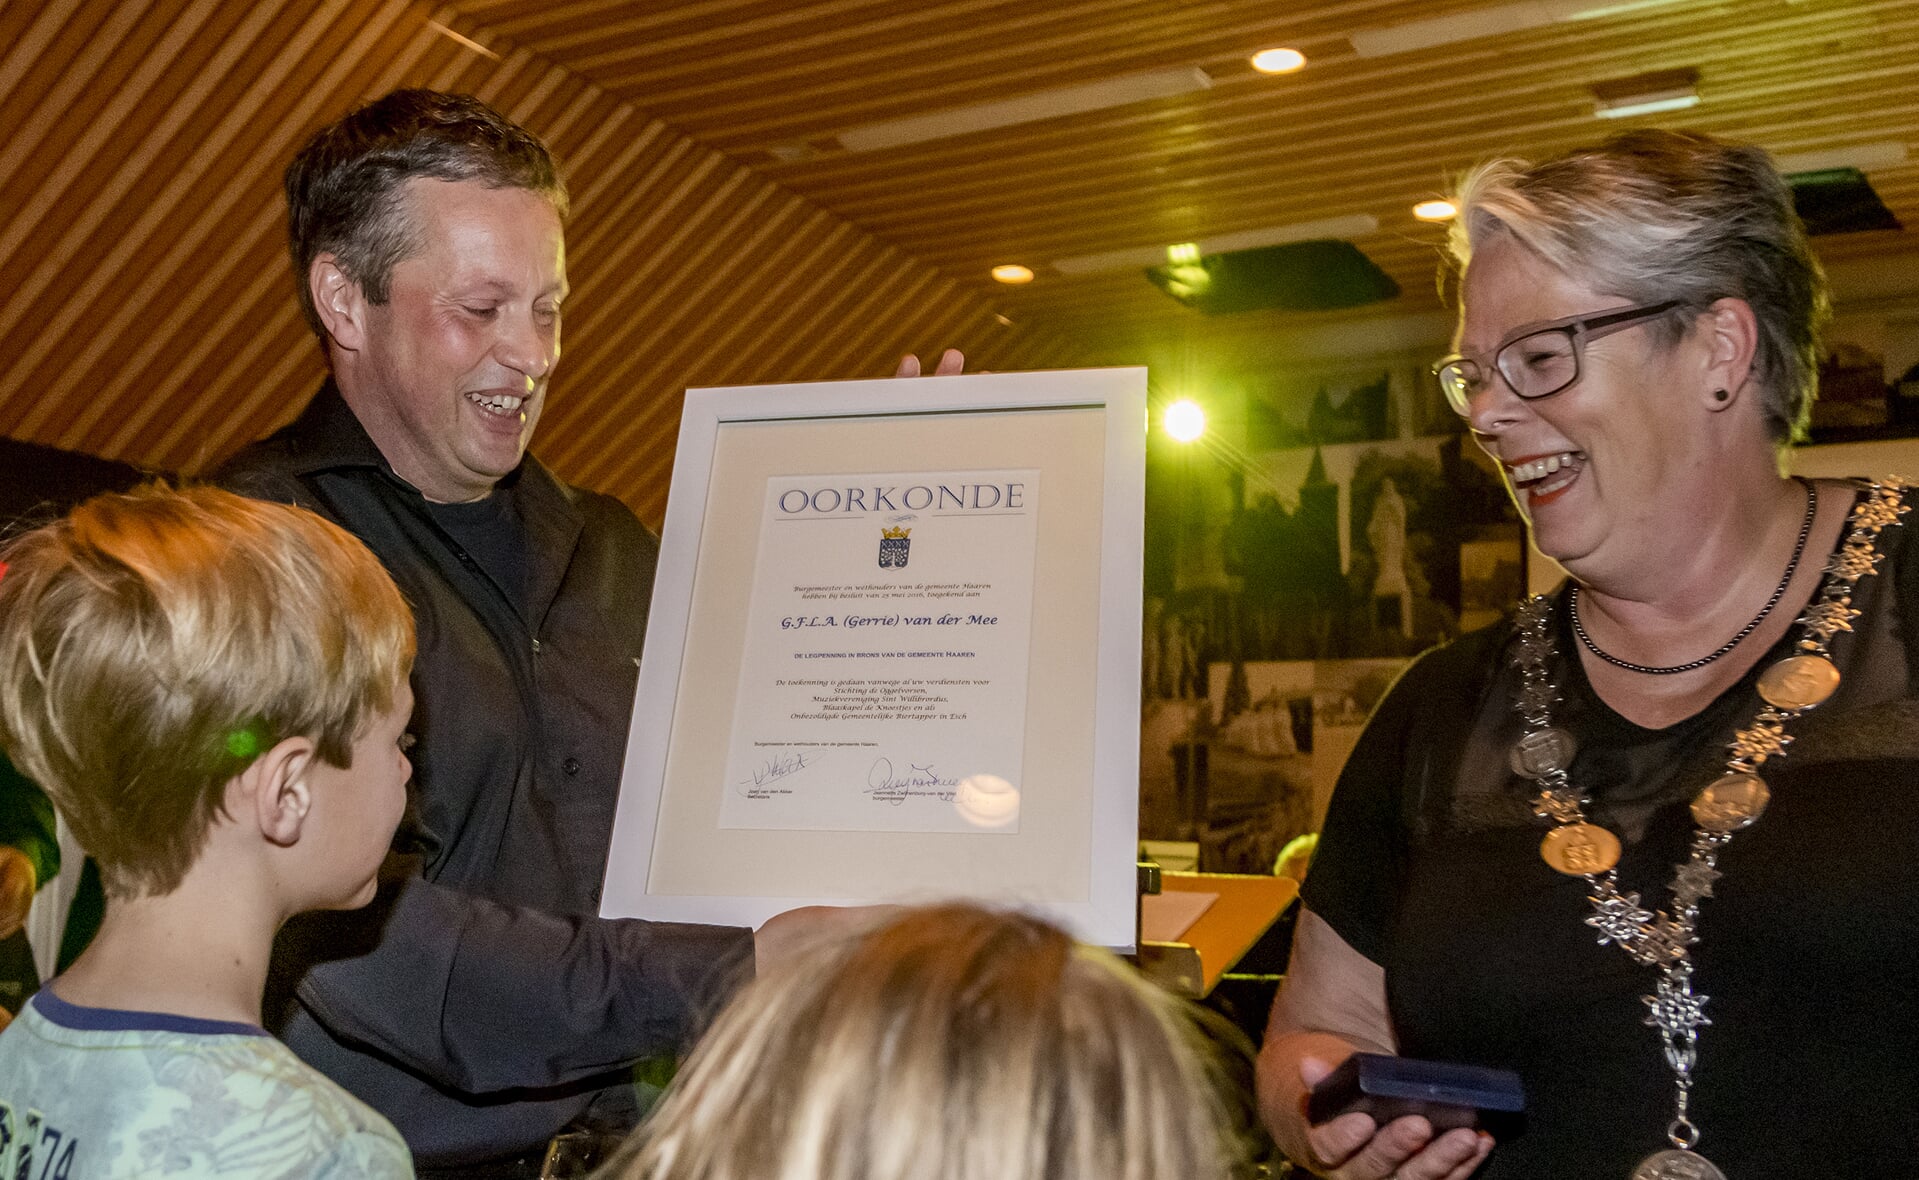 Oud-fanfarevoorzitter Gerrie van der Mee ontving tijdens MaEschtro de bronzen legpenning van verdiensten van de gemeente Haaren uit handen van burgemeester Jeanette Zwijnenburg (rechts).  (Foto: Peter de Koning). 